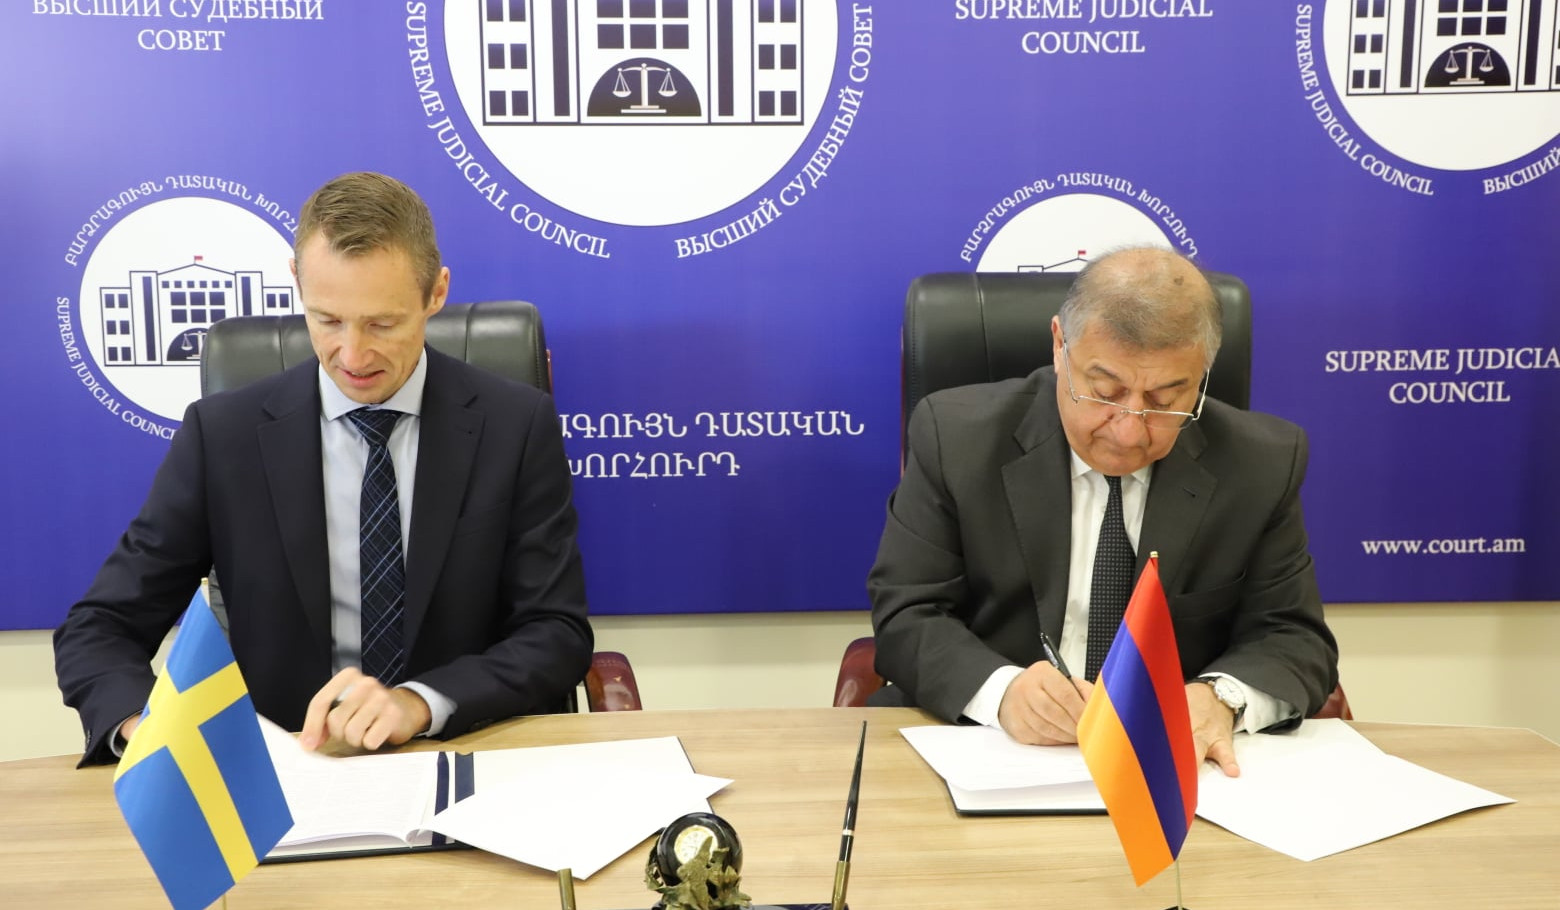 Армения и Швеция будут сотрудничать в судебно-правовой сфере